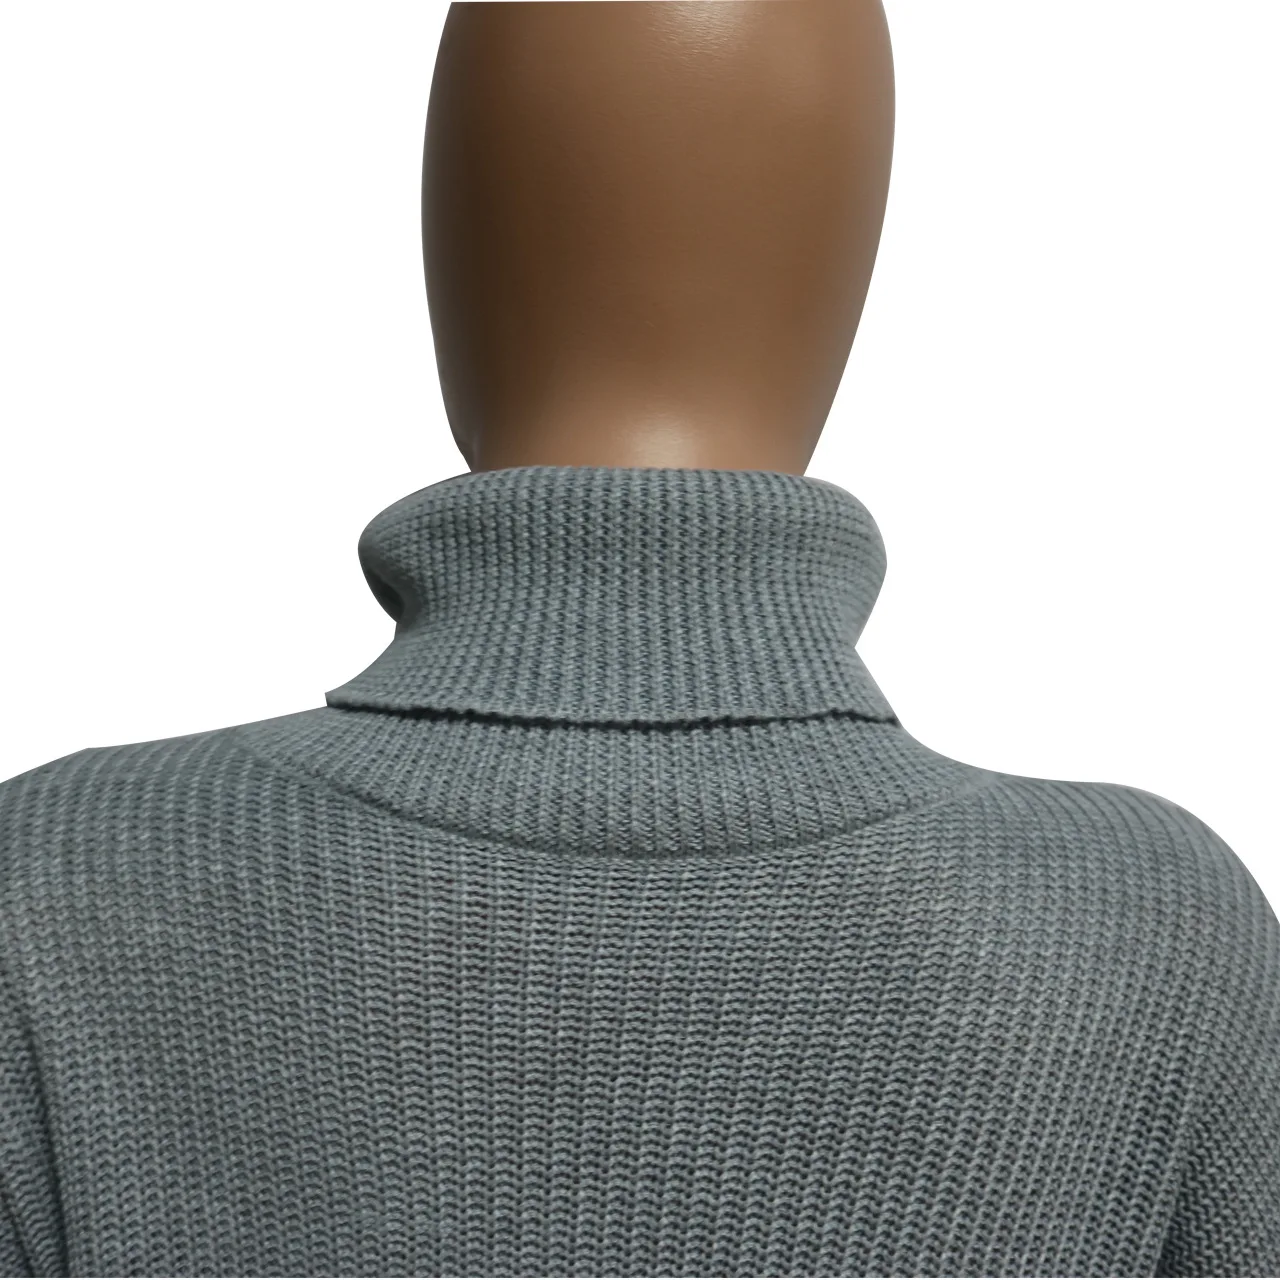 HAOOHU вязаный комплект из 2 предметов женская одежда осень зима наряд водолазка свитер Топ и миди юбки костюм комплект из двух предметов